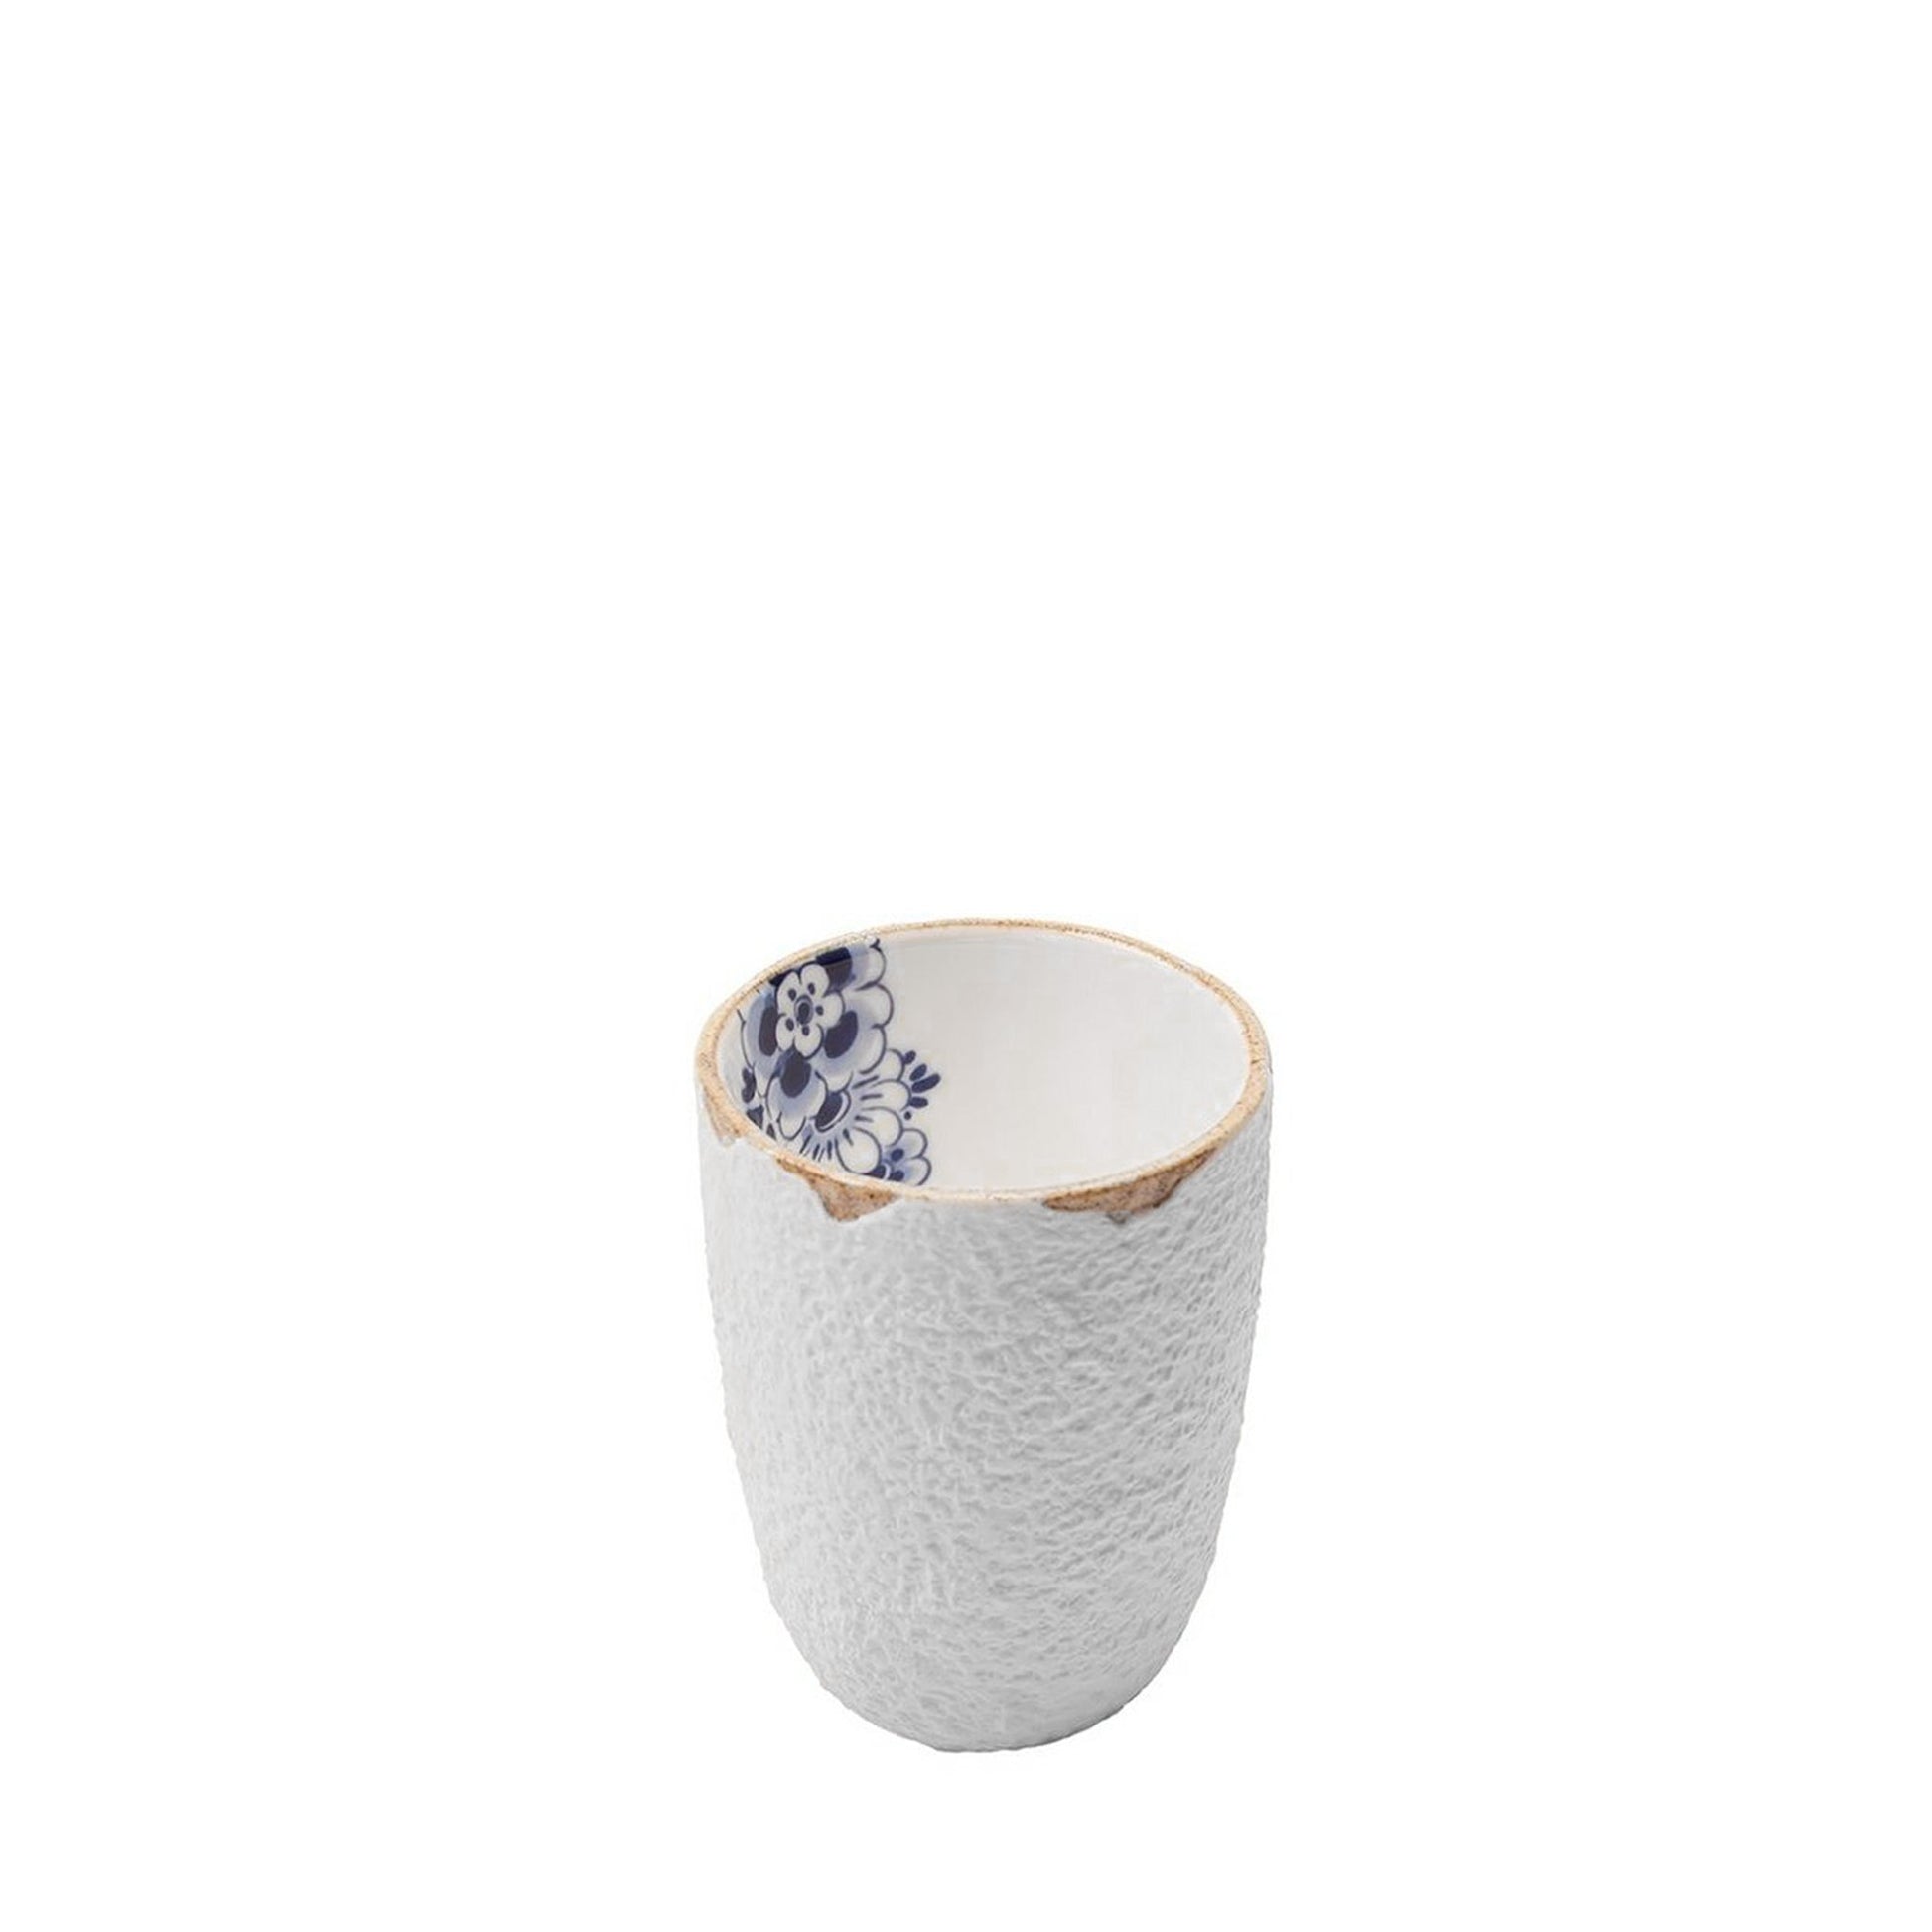 Holländischer Becher mit Blütenmuster - glasiert innen - Klein - Vandeley